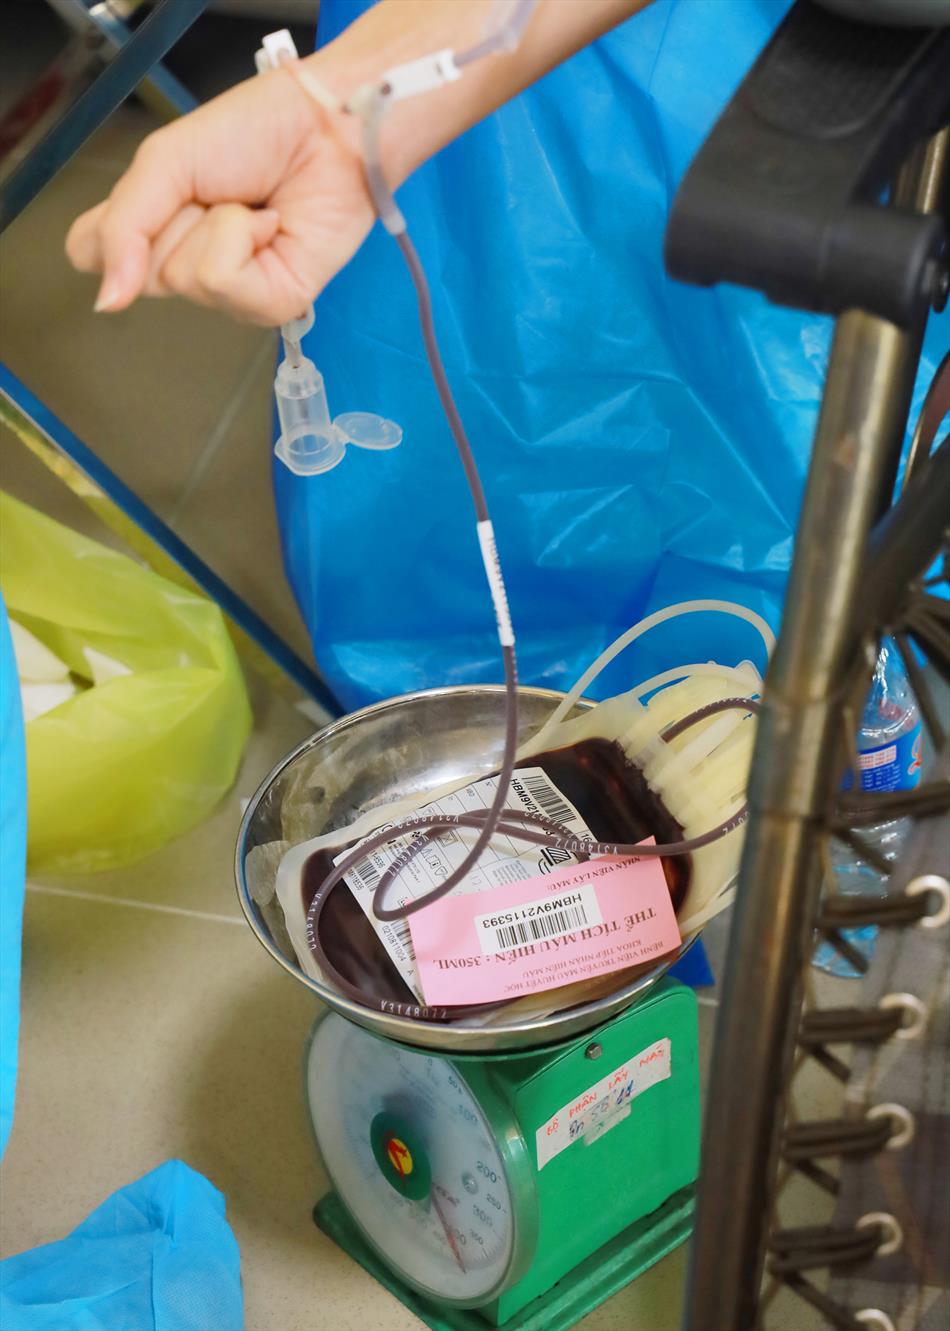 Chùa Ân Thọ tích cực hoạt động xã hội – nổi bật là phong trào hiến máu tình nguyện